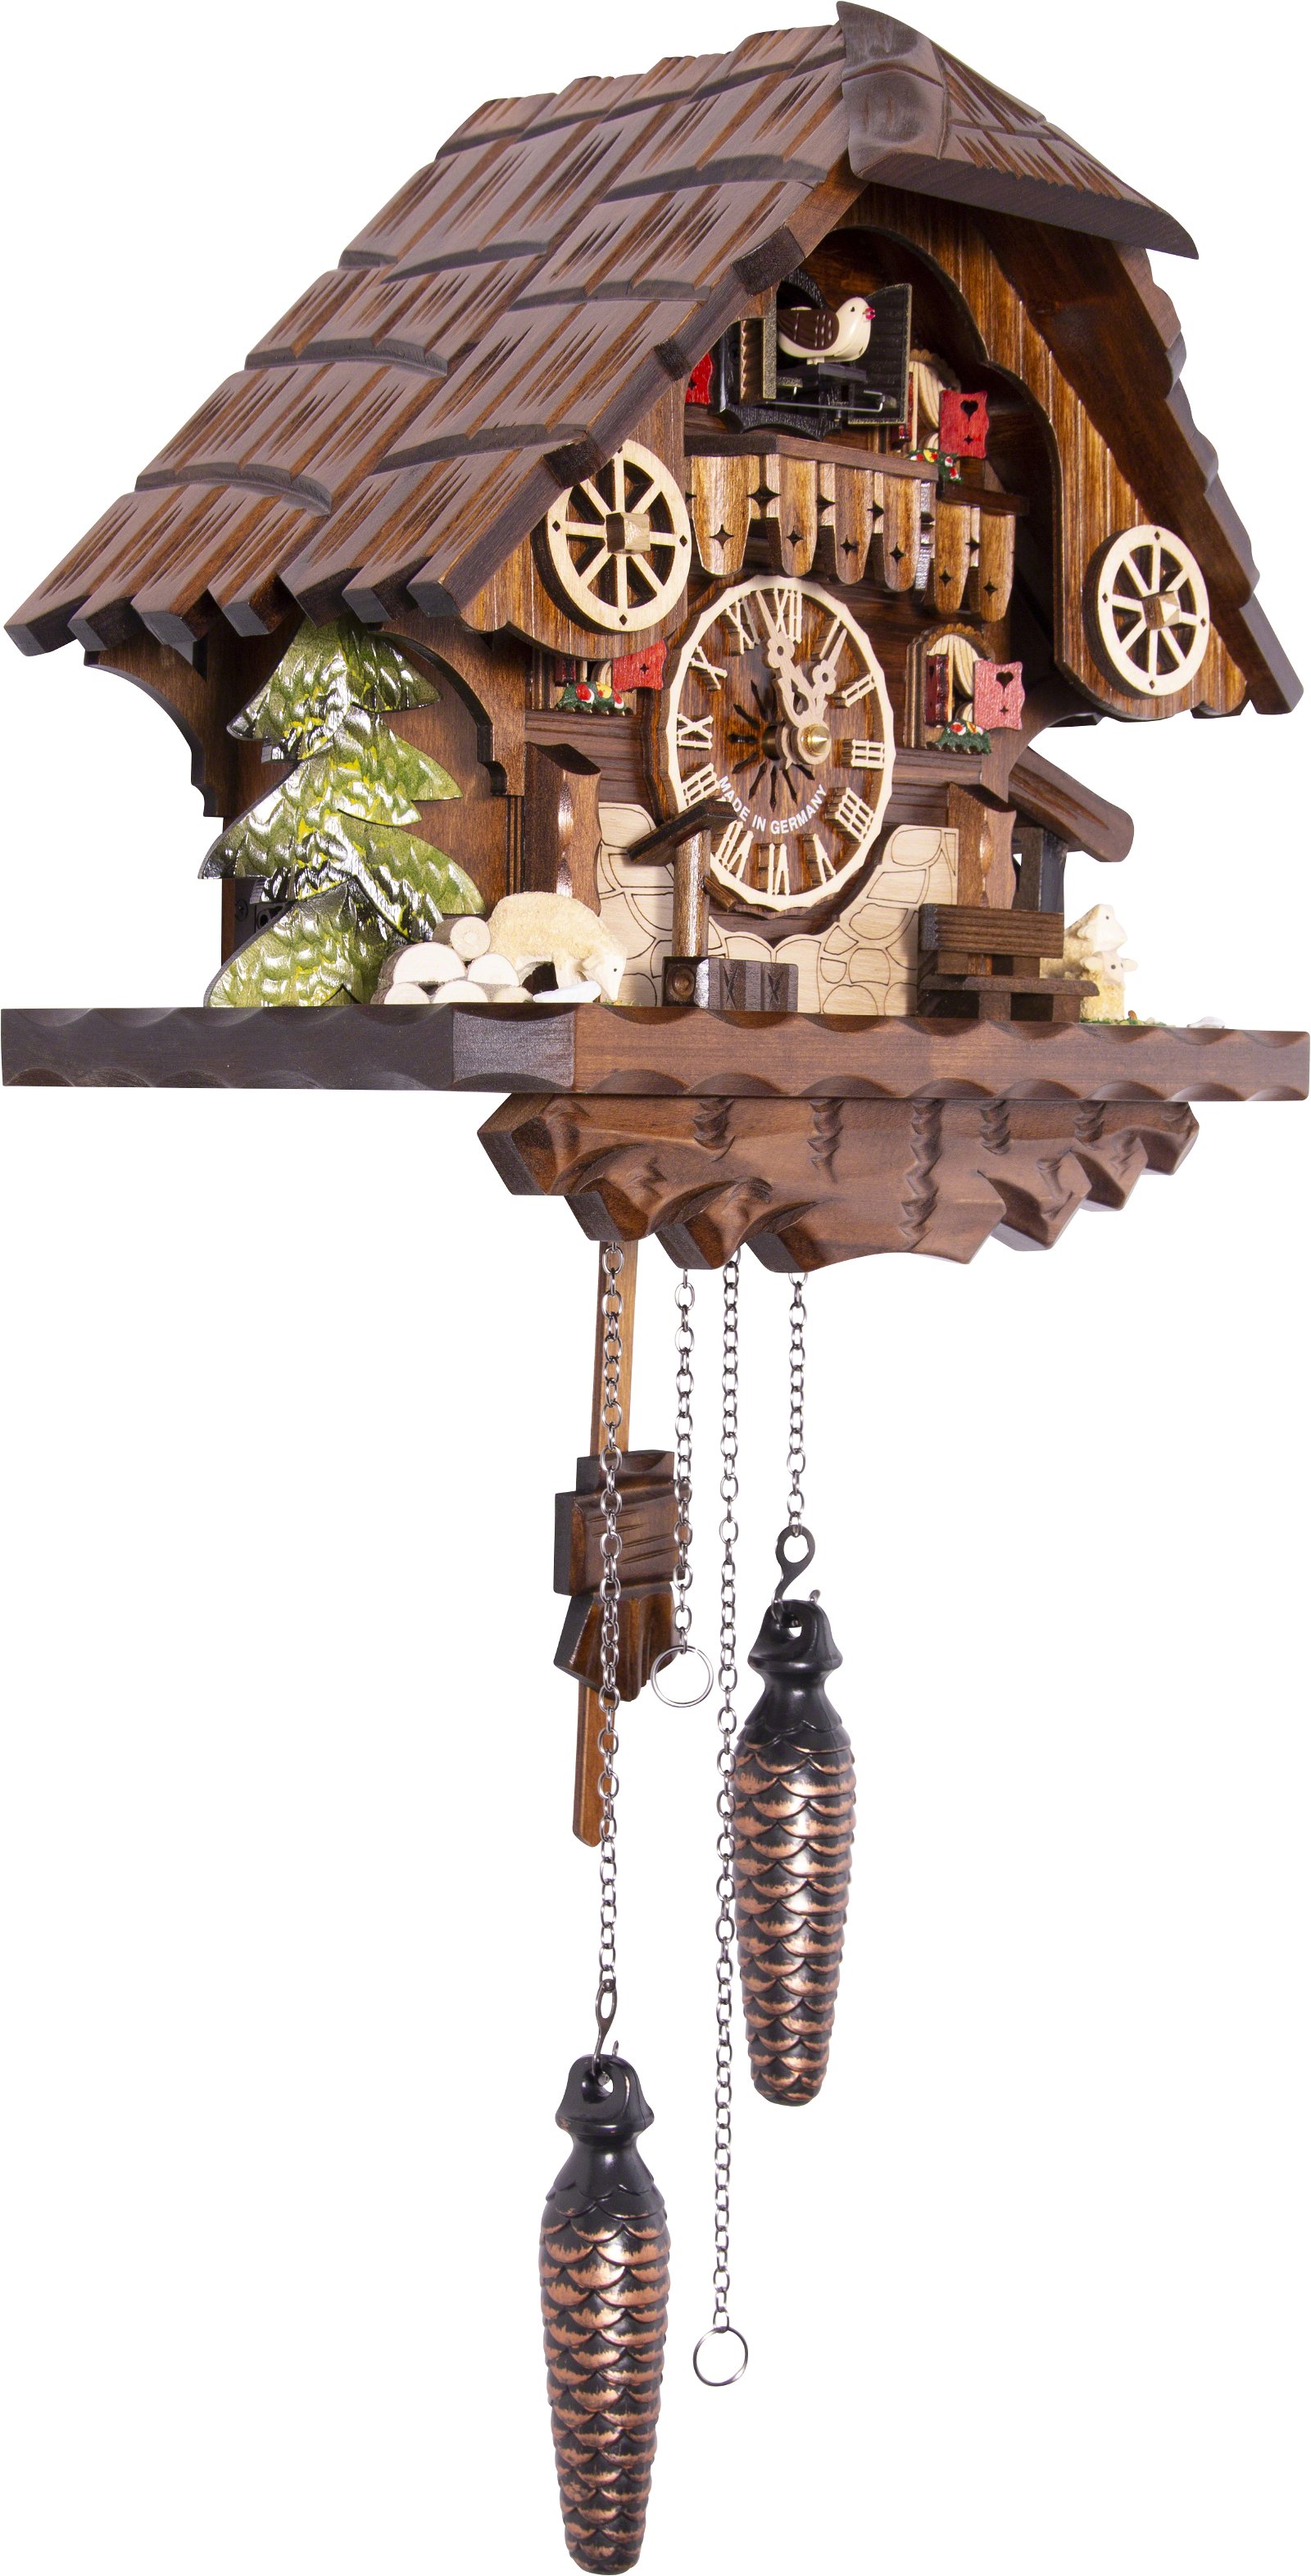 Kuckucksuhr Quarz-Uhrwerk Chalet-Stil 28cm von Engstler